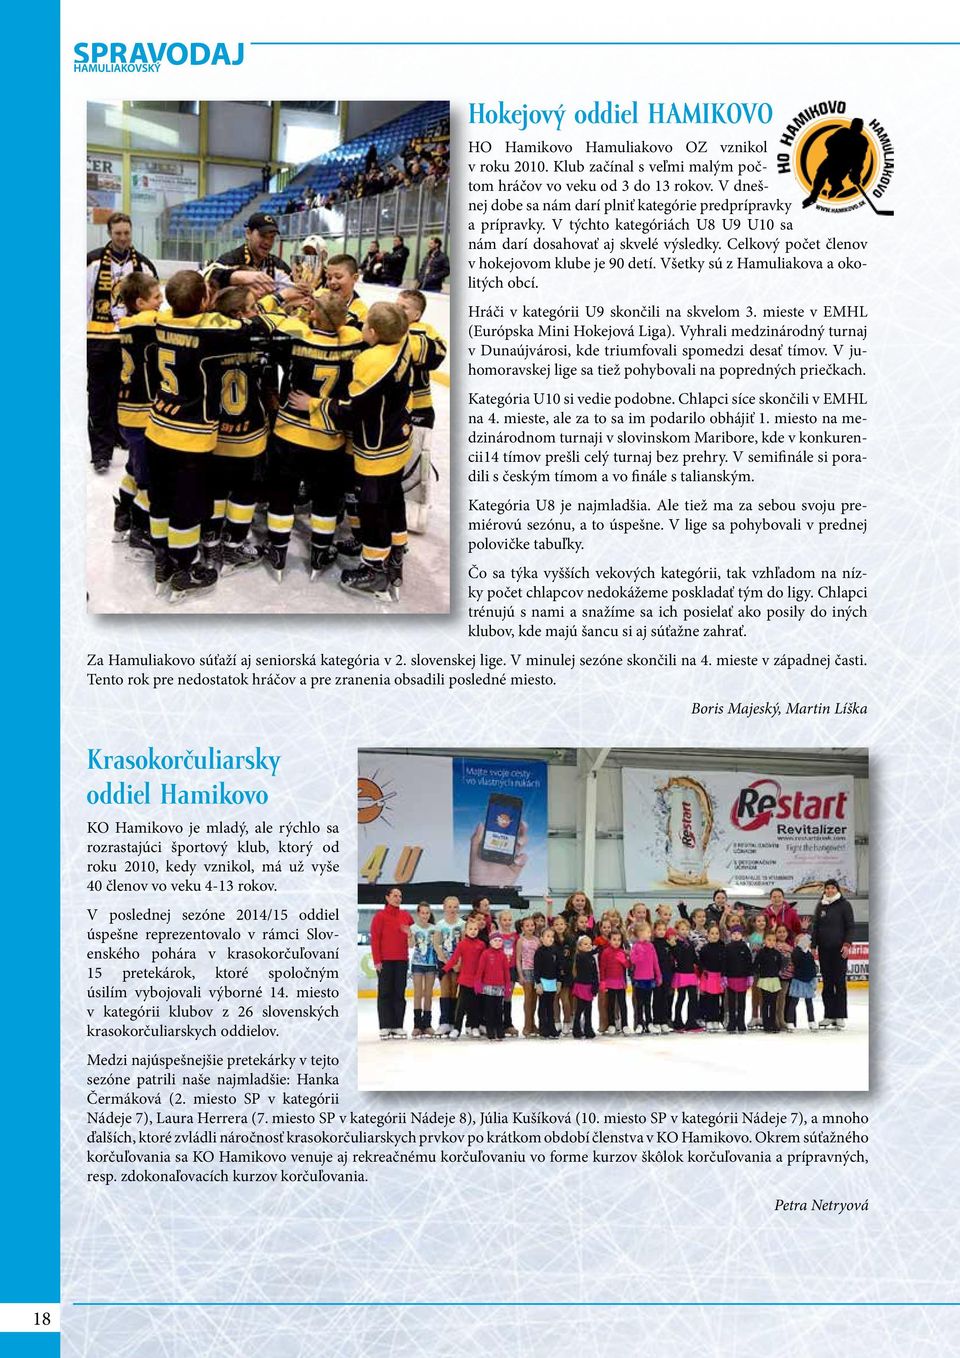 Všetky sú z Hamuliakova a okolitých obcí. Hráči v kategórii U9 skončili na skvelom 3. mieste v EMHL (Európska Mini Hokejová Liga).